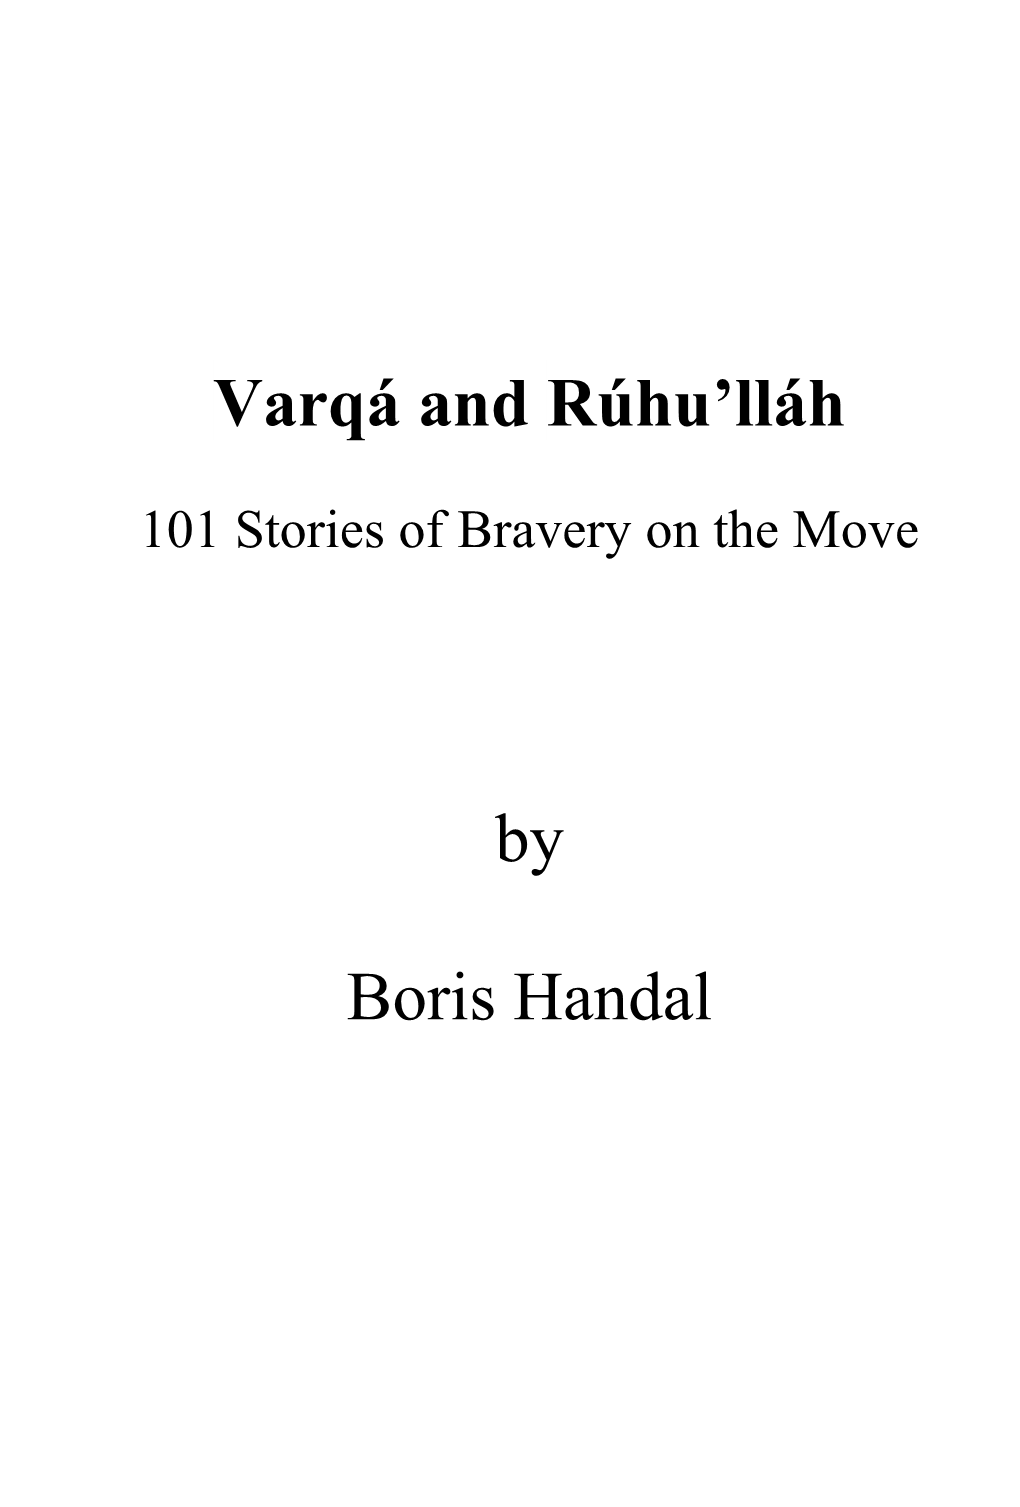 Varqá and Rúhu'lláh by Boris Handal